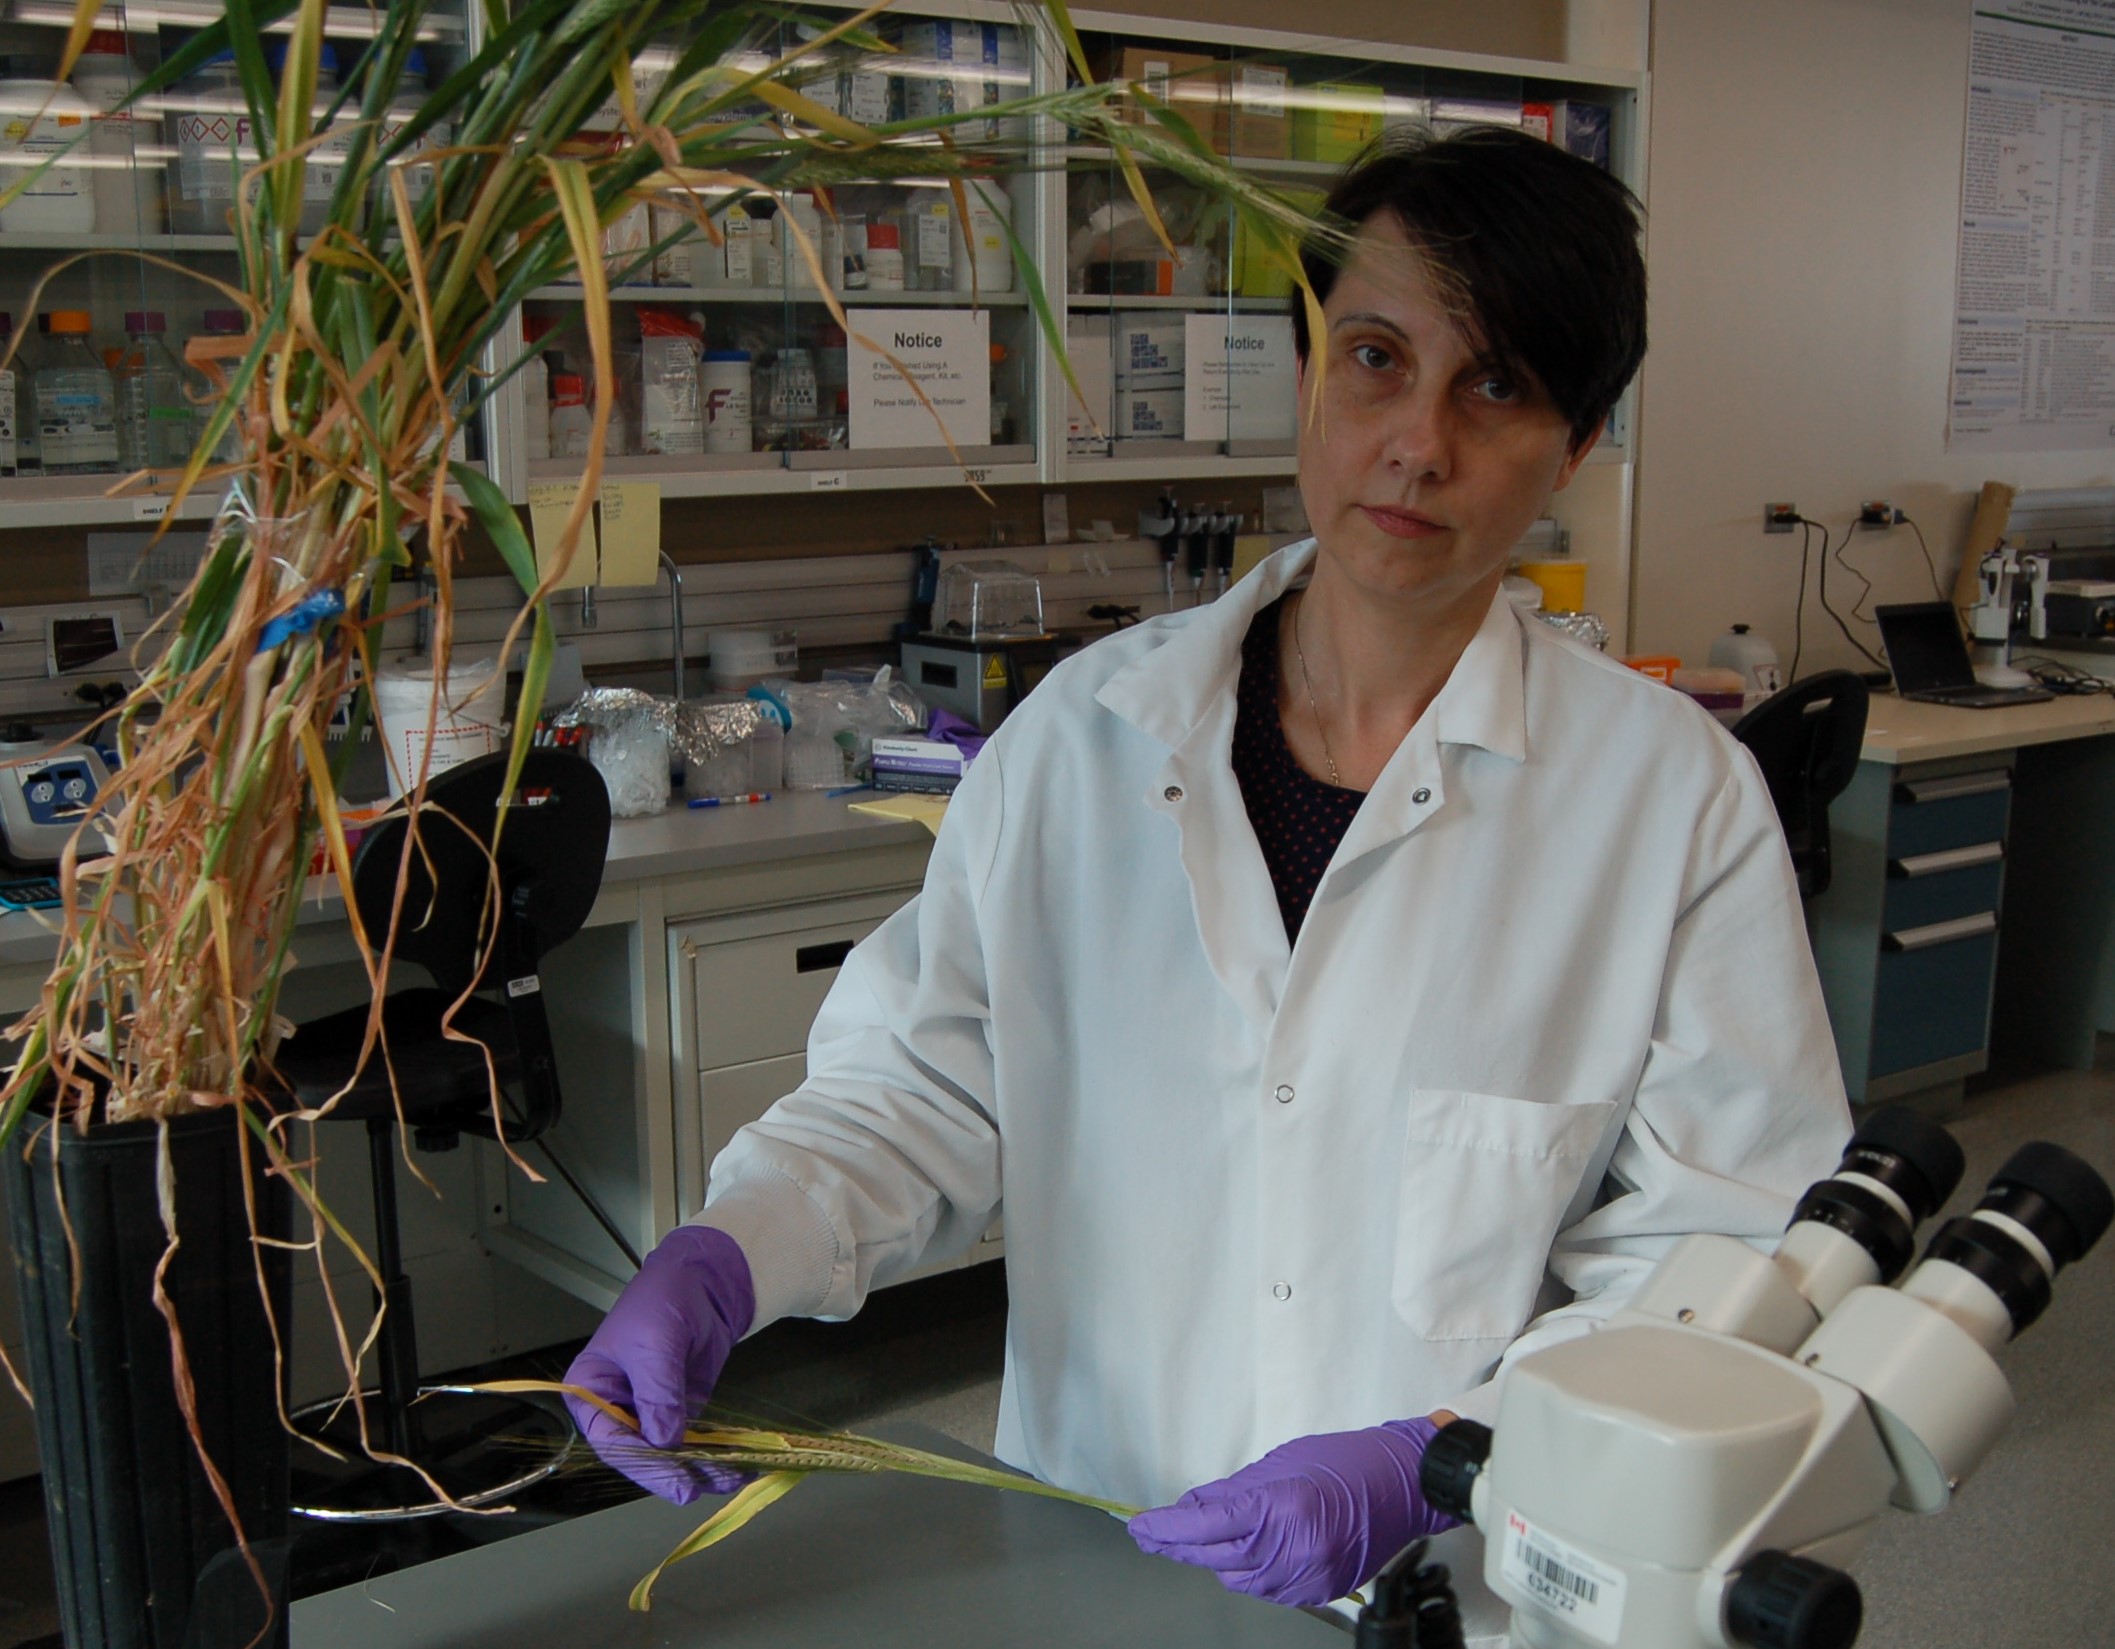 La scientifique Ana Badea inspecte de grands plants d’orge posés sur un banc dans une serre.